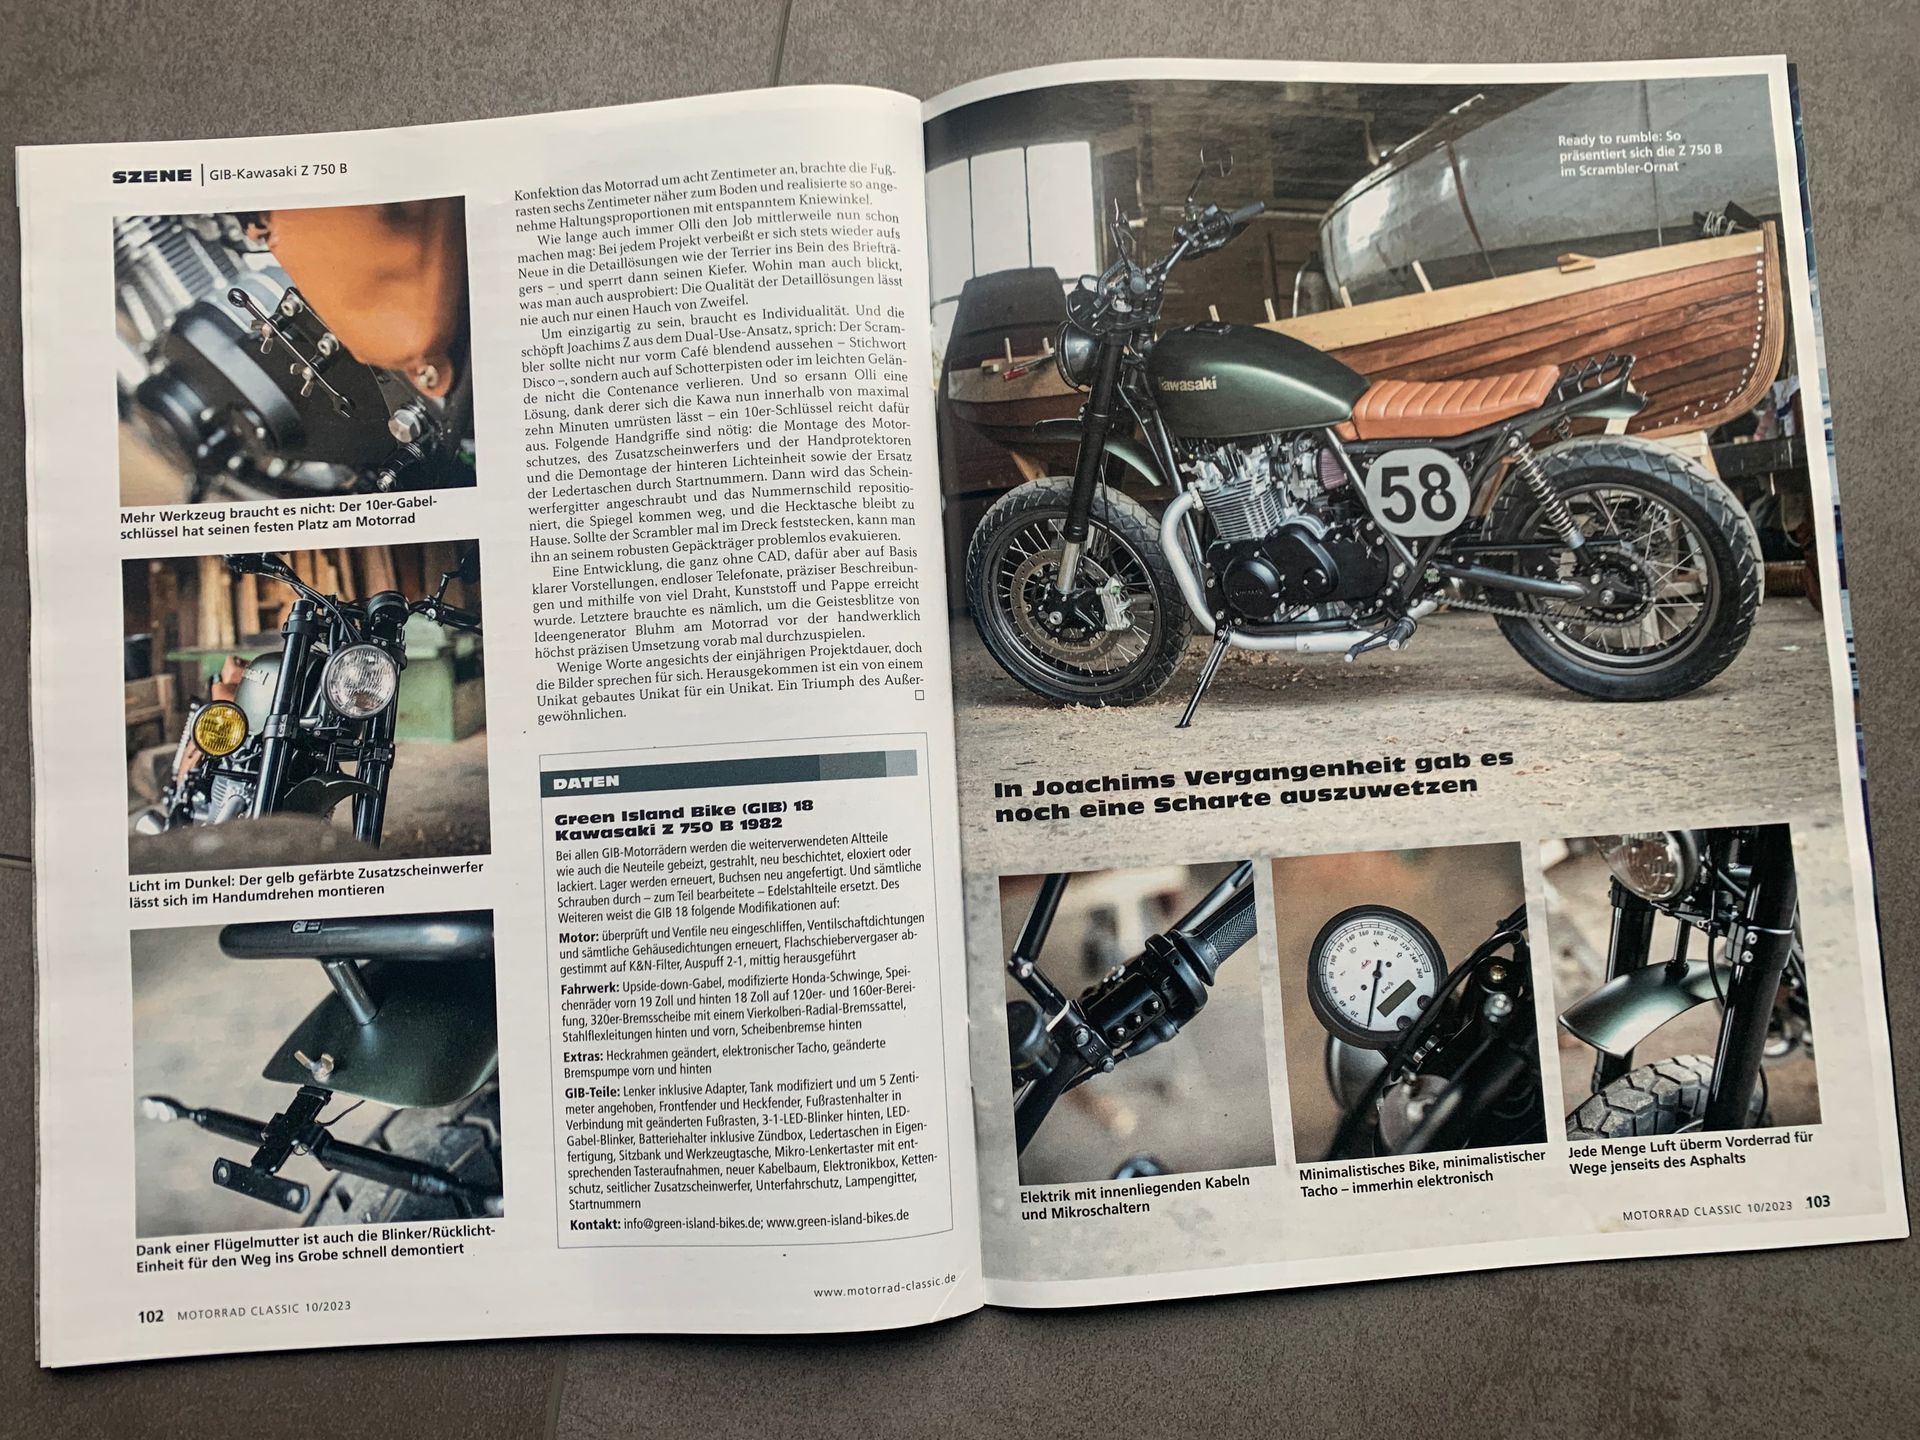 Kawasaki Z 750 B Twin von Green Island Bikes. Bericht in der Motorrad-Classic über unseren Dual Use Scrambler
